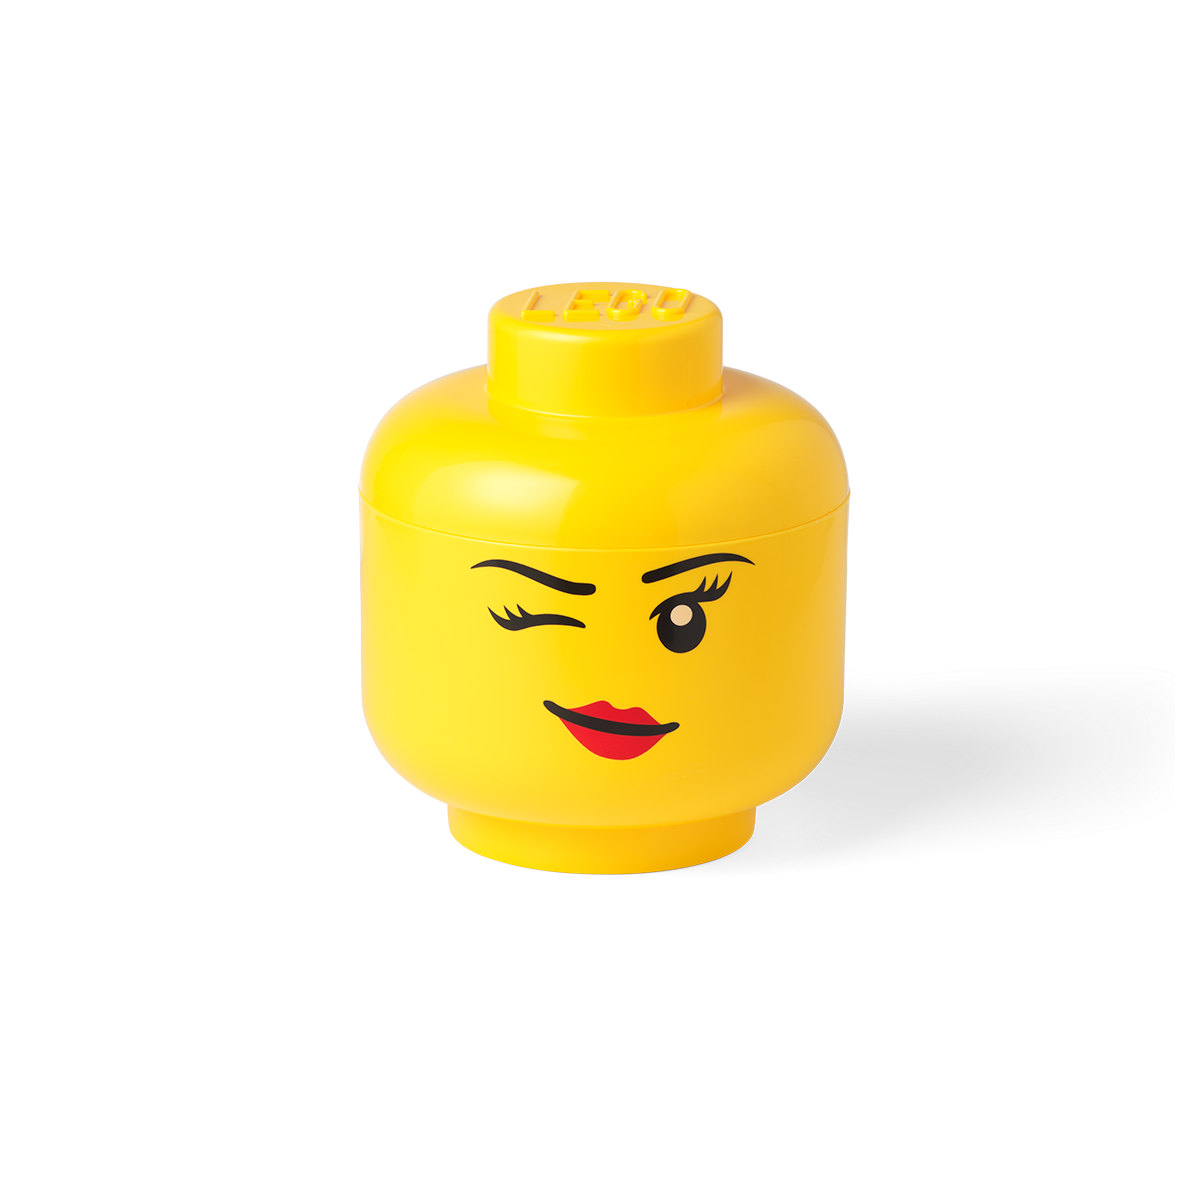 Lego 4032 - Storage Head Large Winking